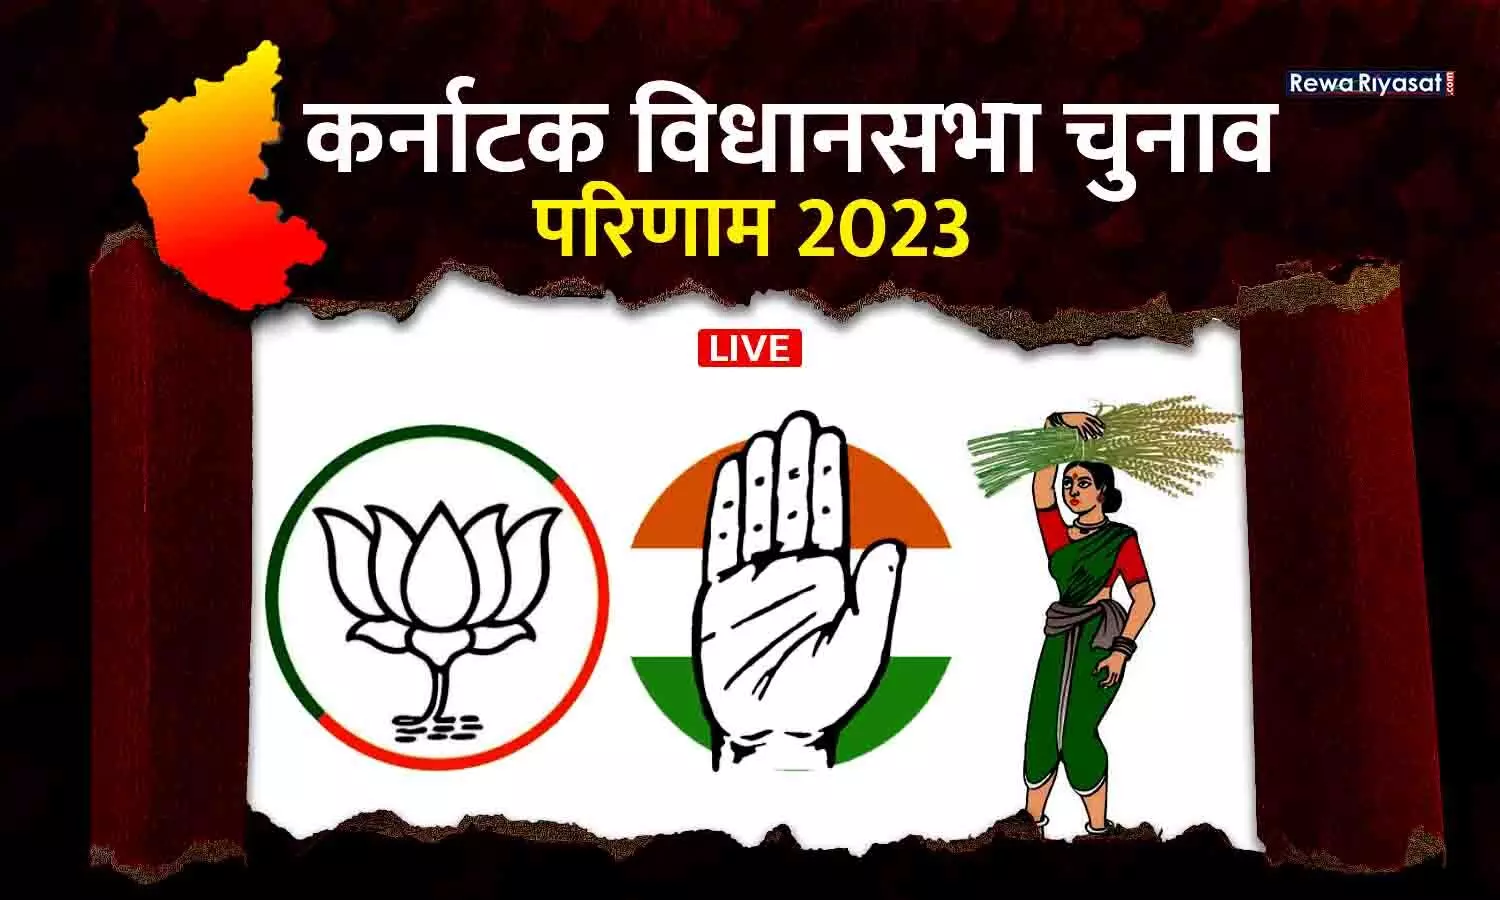 Karnataka Election Results 2023 Live Updates: भाजपा ने हार मानी, पीएम मोदी ने कर्नाटक में जीत के लिए कांग्रेस को बधाई दी